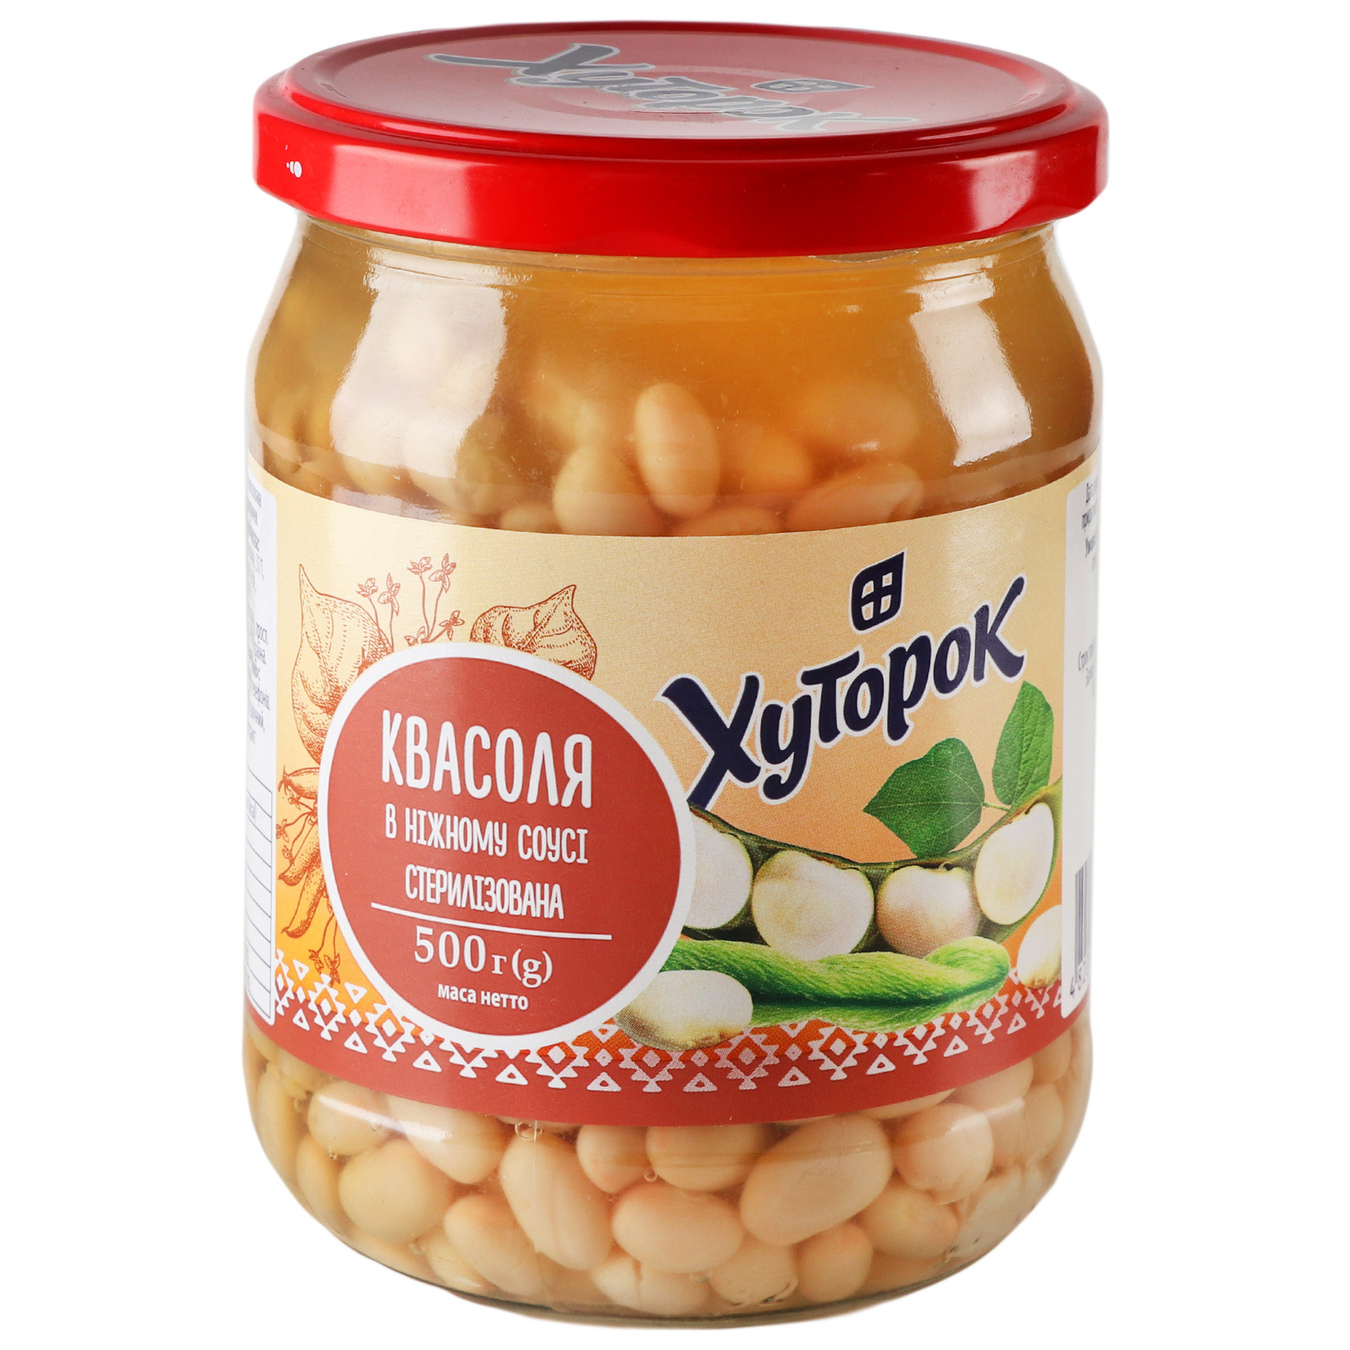 Khutorok beans in a delicate sauce 500g glass jar 2